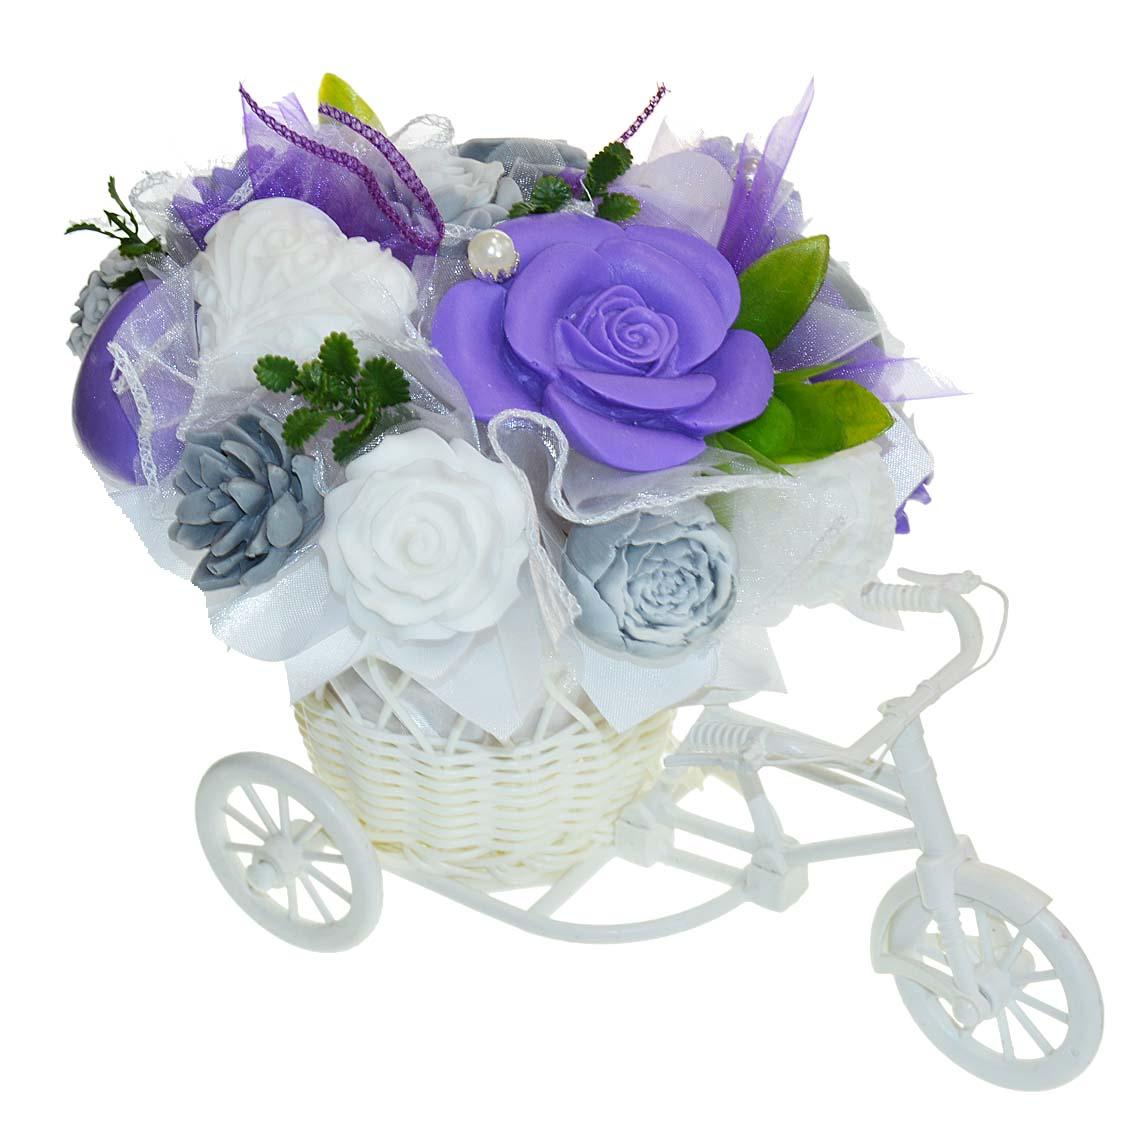 Mydlová Kytica bicykel - fialovo, sivo, biela